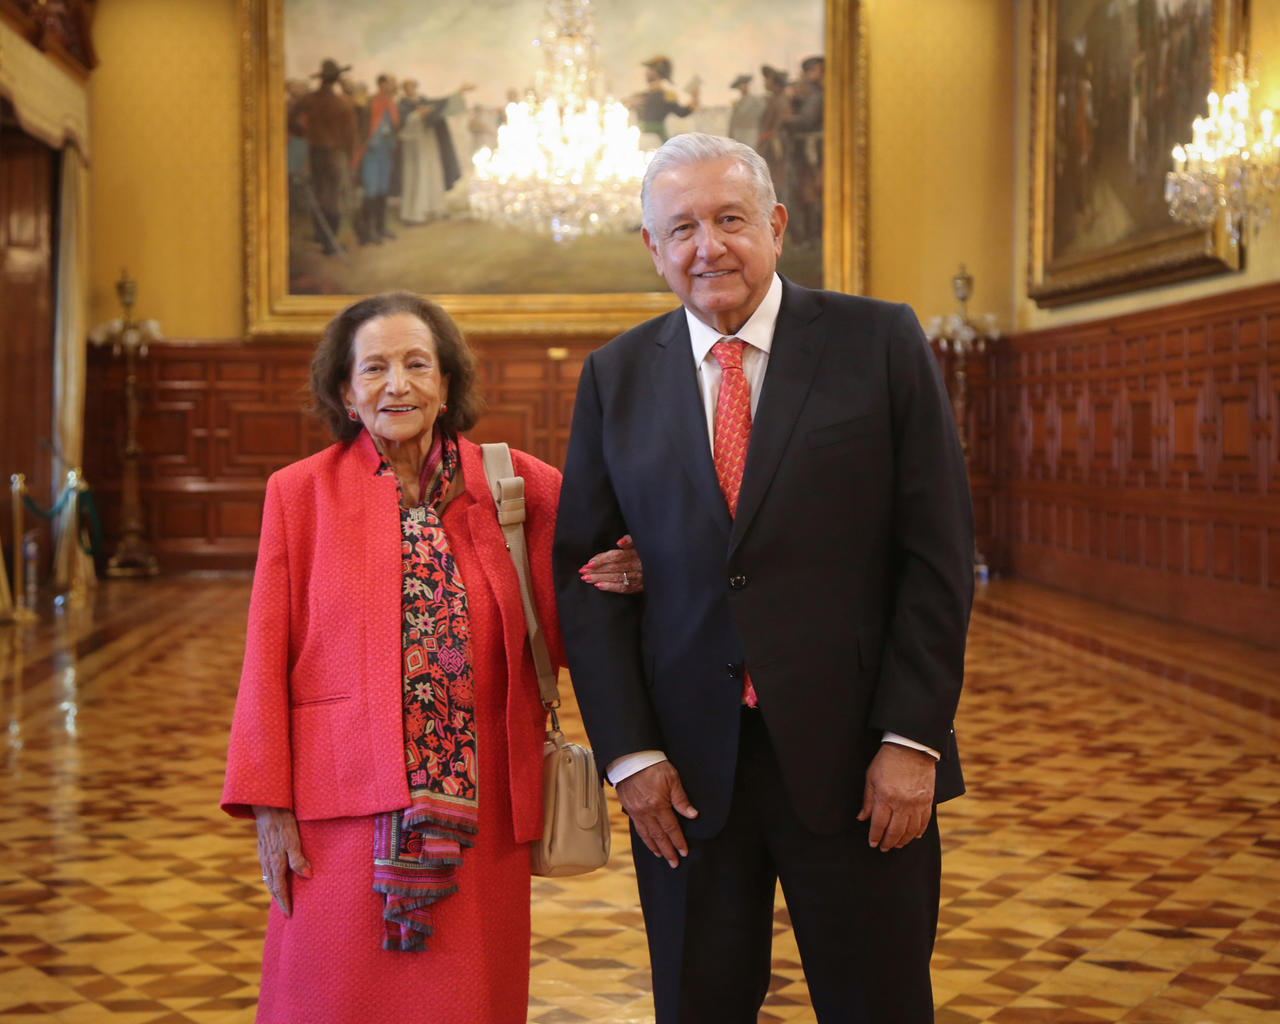 El presidente Andrés Manuel López Obrador difundió esta mañana una fotografía del encuentro que sostuvo ayer martes con la senadora Ifigenia Martínez en Palacio Nacional. (TWITTER)